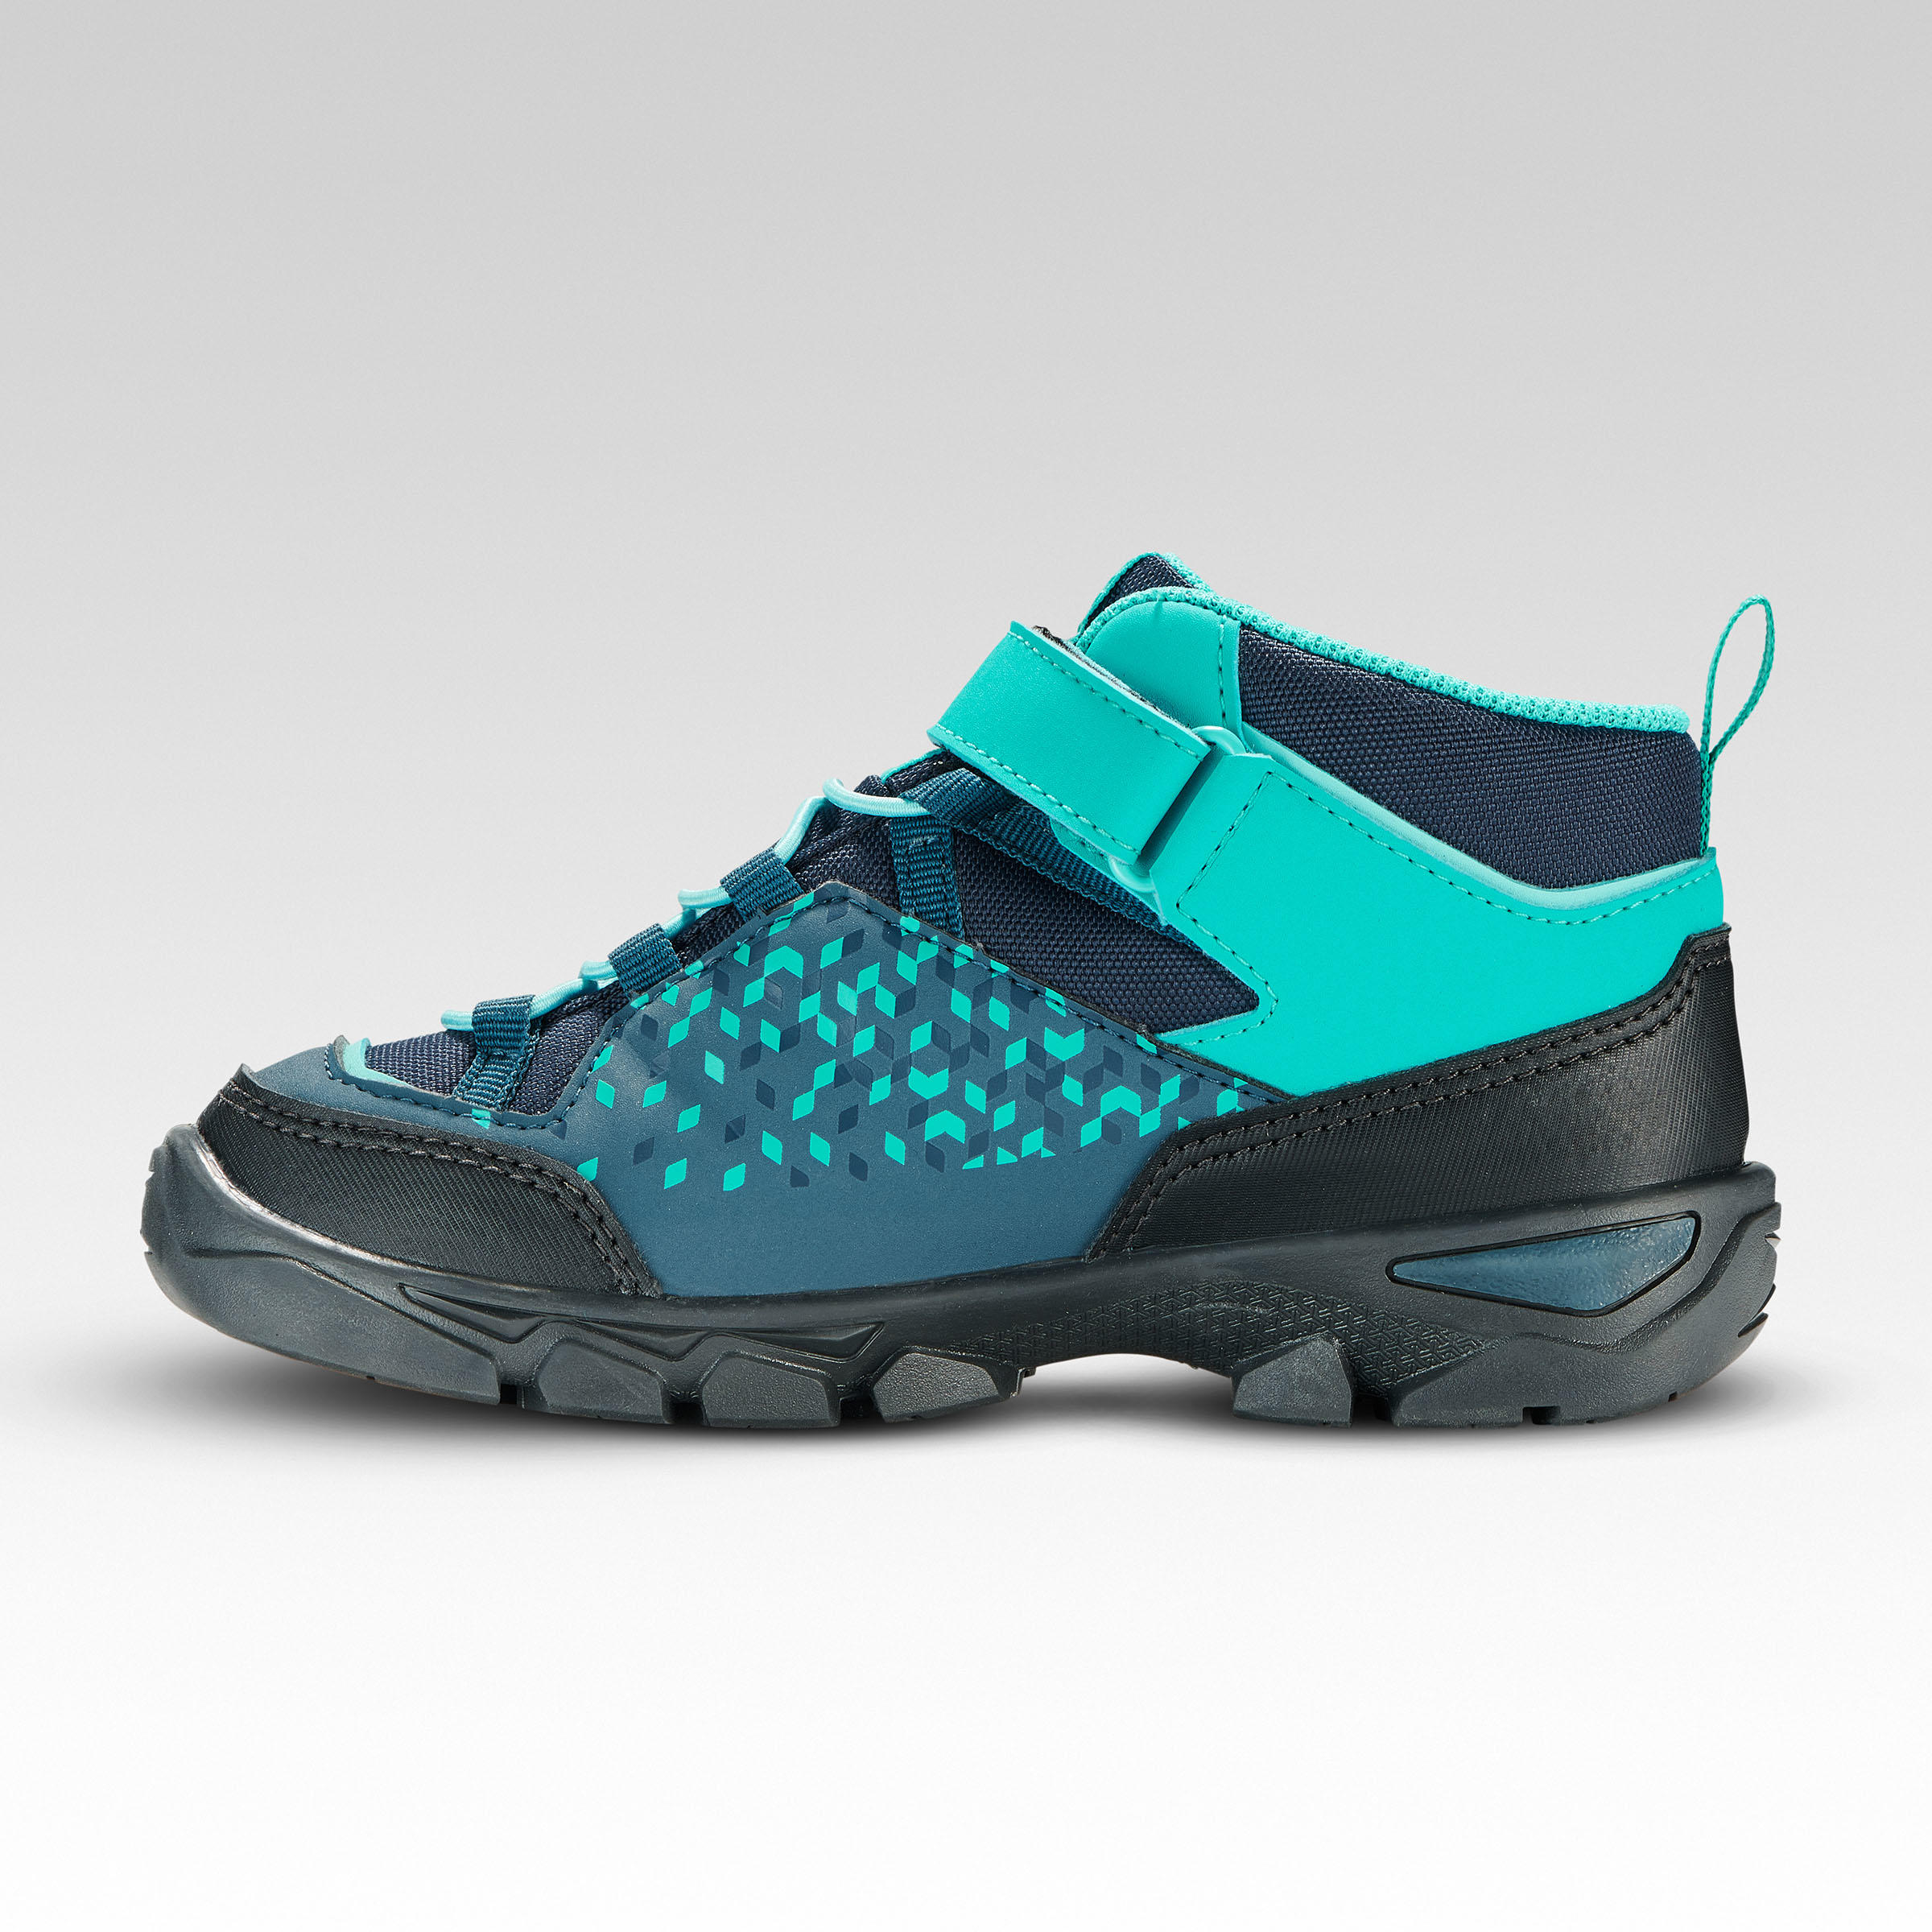 Chaussures randonnée enfant - MH120 turquoise - QUECHUA